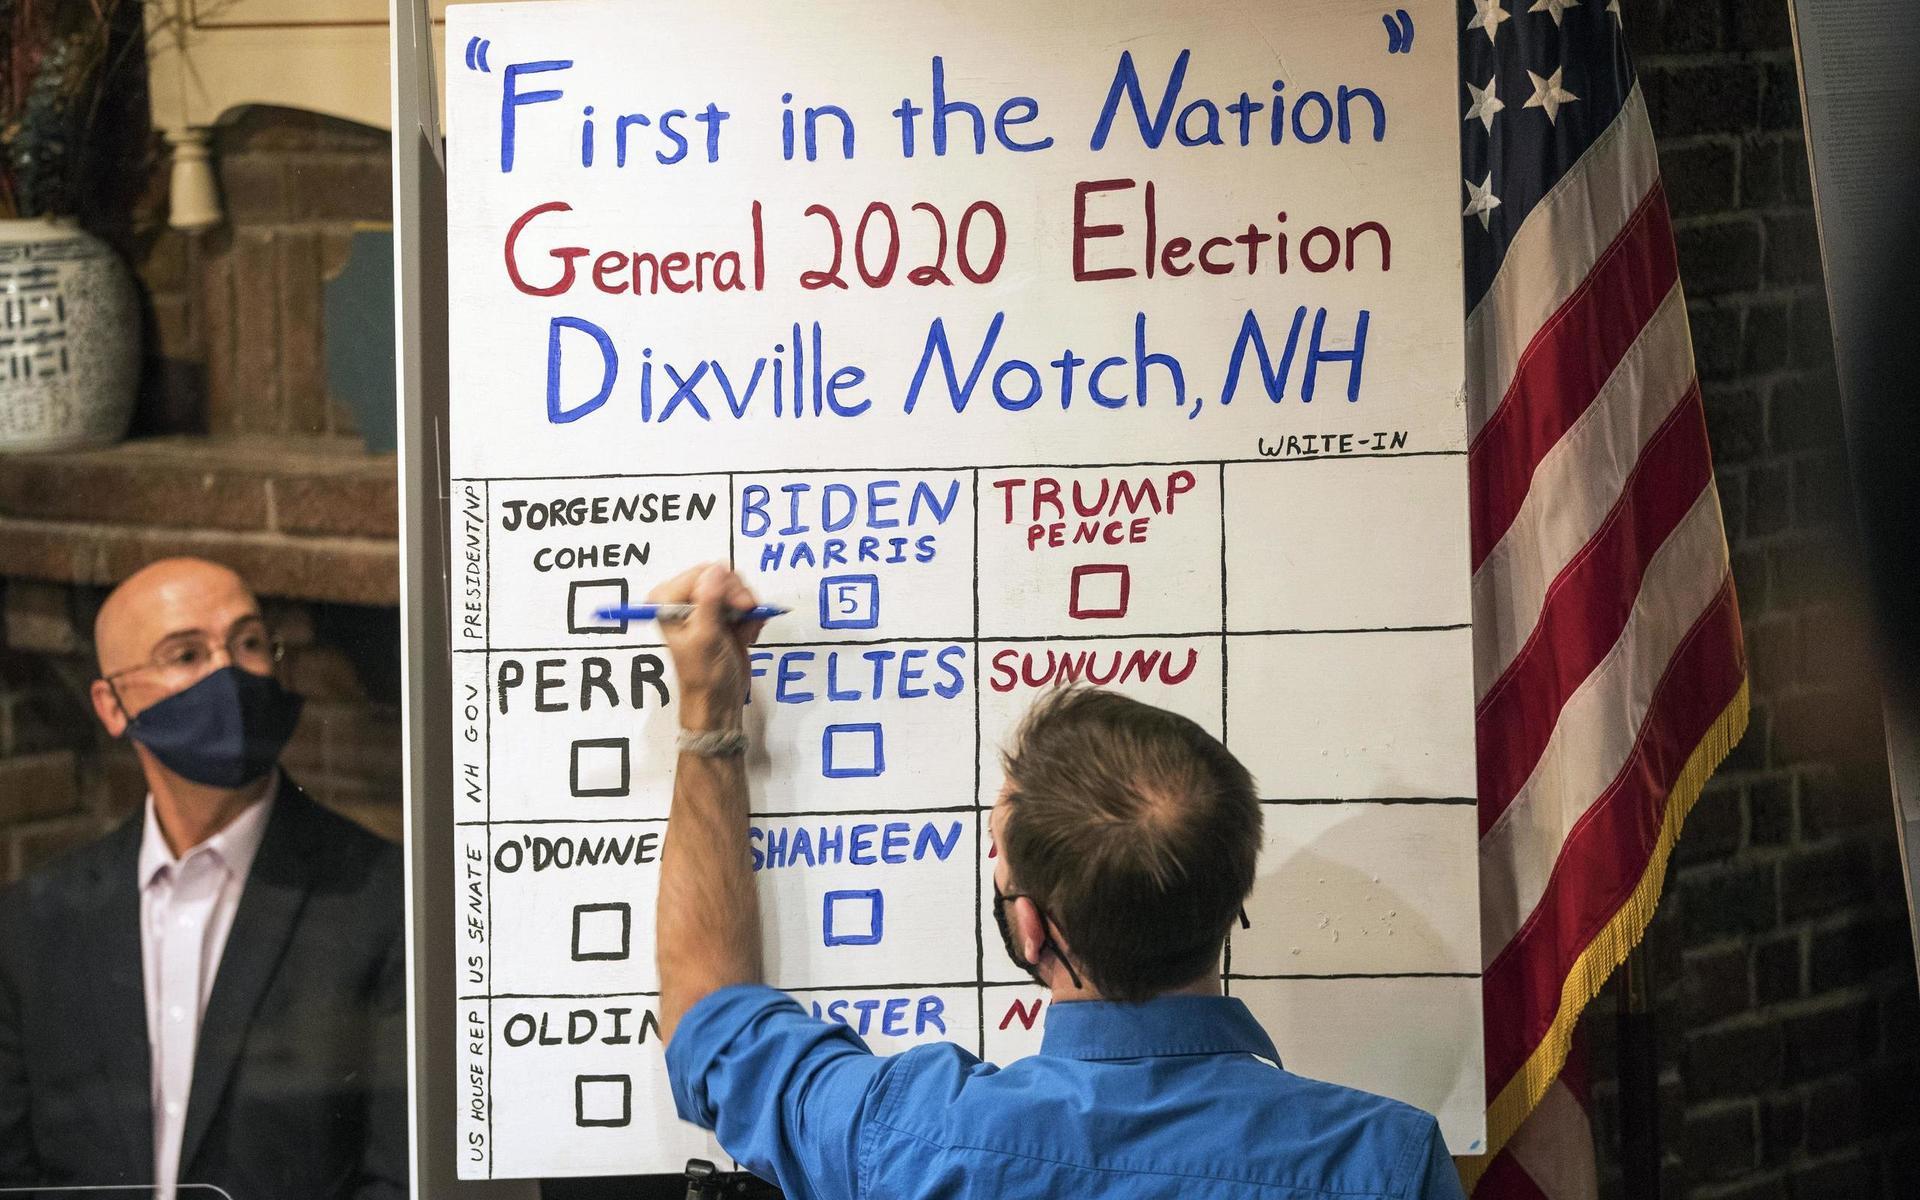 Bra början för Joe Biden i presidentvalet. Han tog hem samtliga fem röster i den första lilla valkretsen i New Hampshire när valdagen inleddes redan vid midnatt, amerikansk öststatstid, på tisdagen.